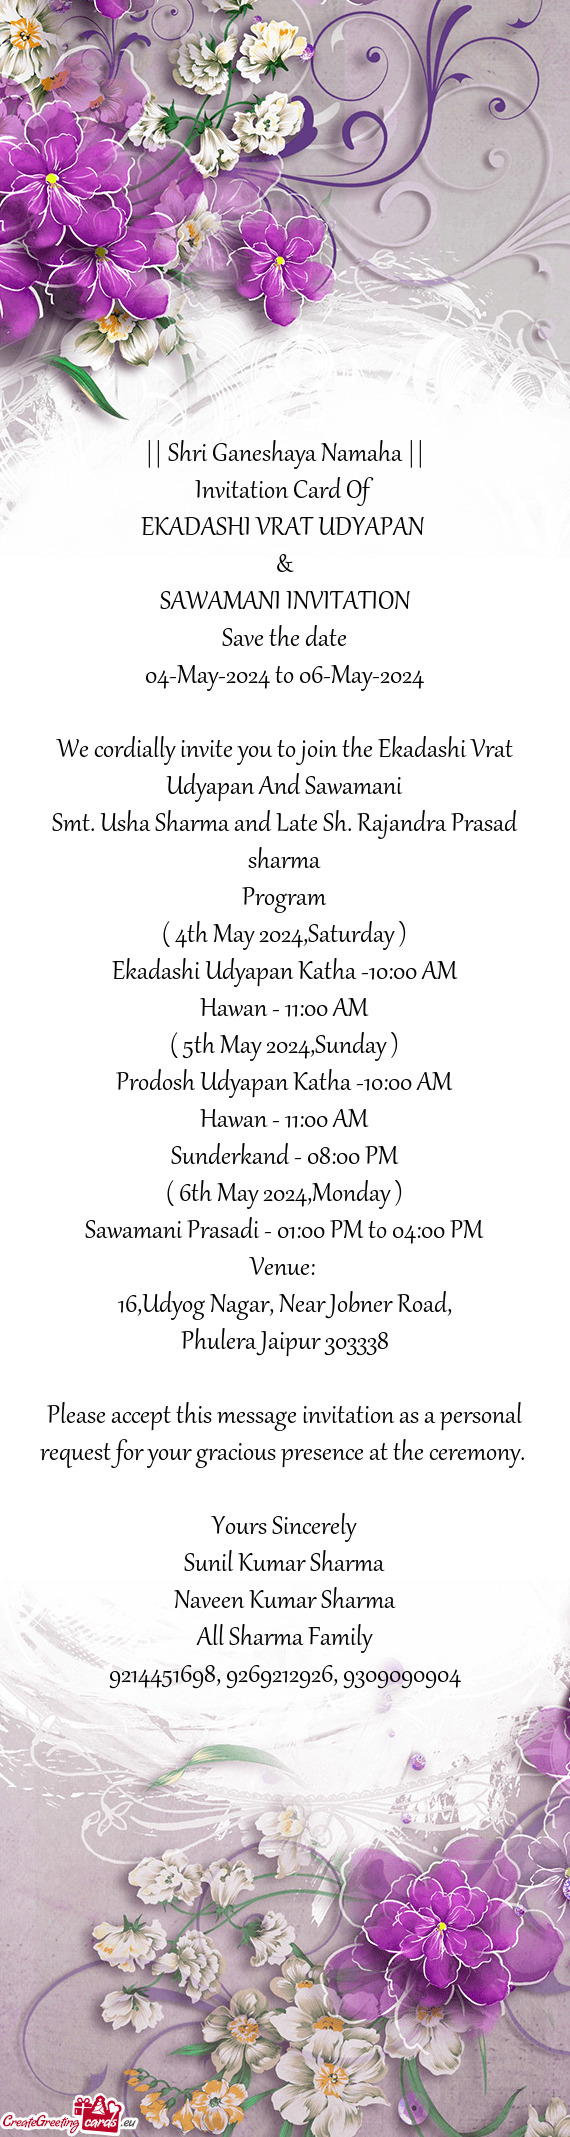 We cordially invite you to join the Ekadashi Vrat Udyapan And Sawamani